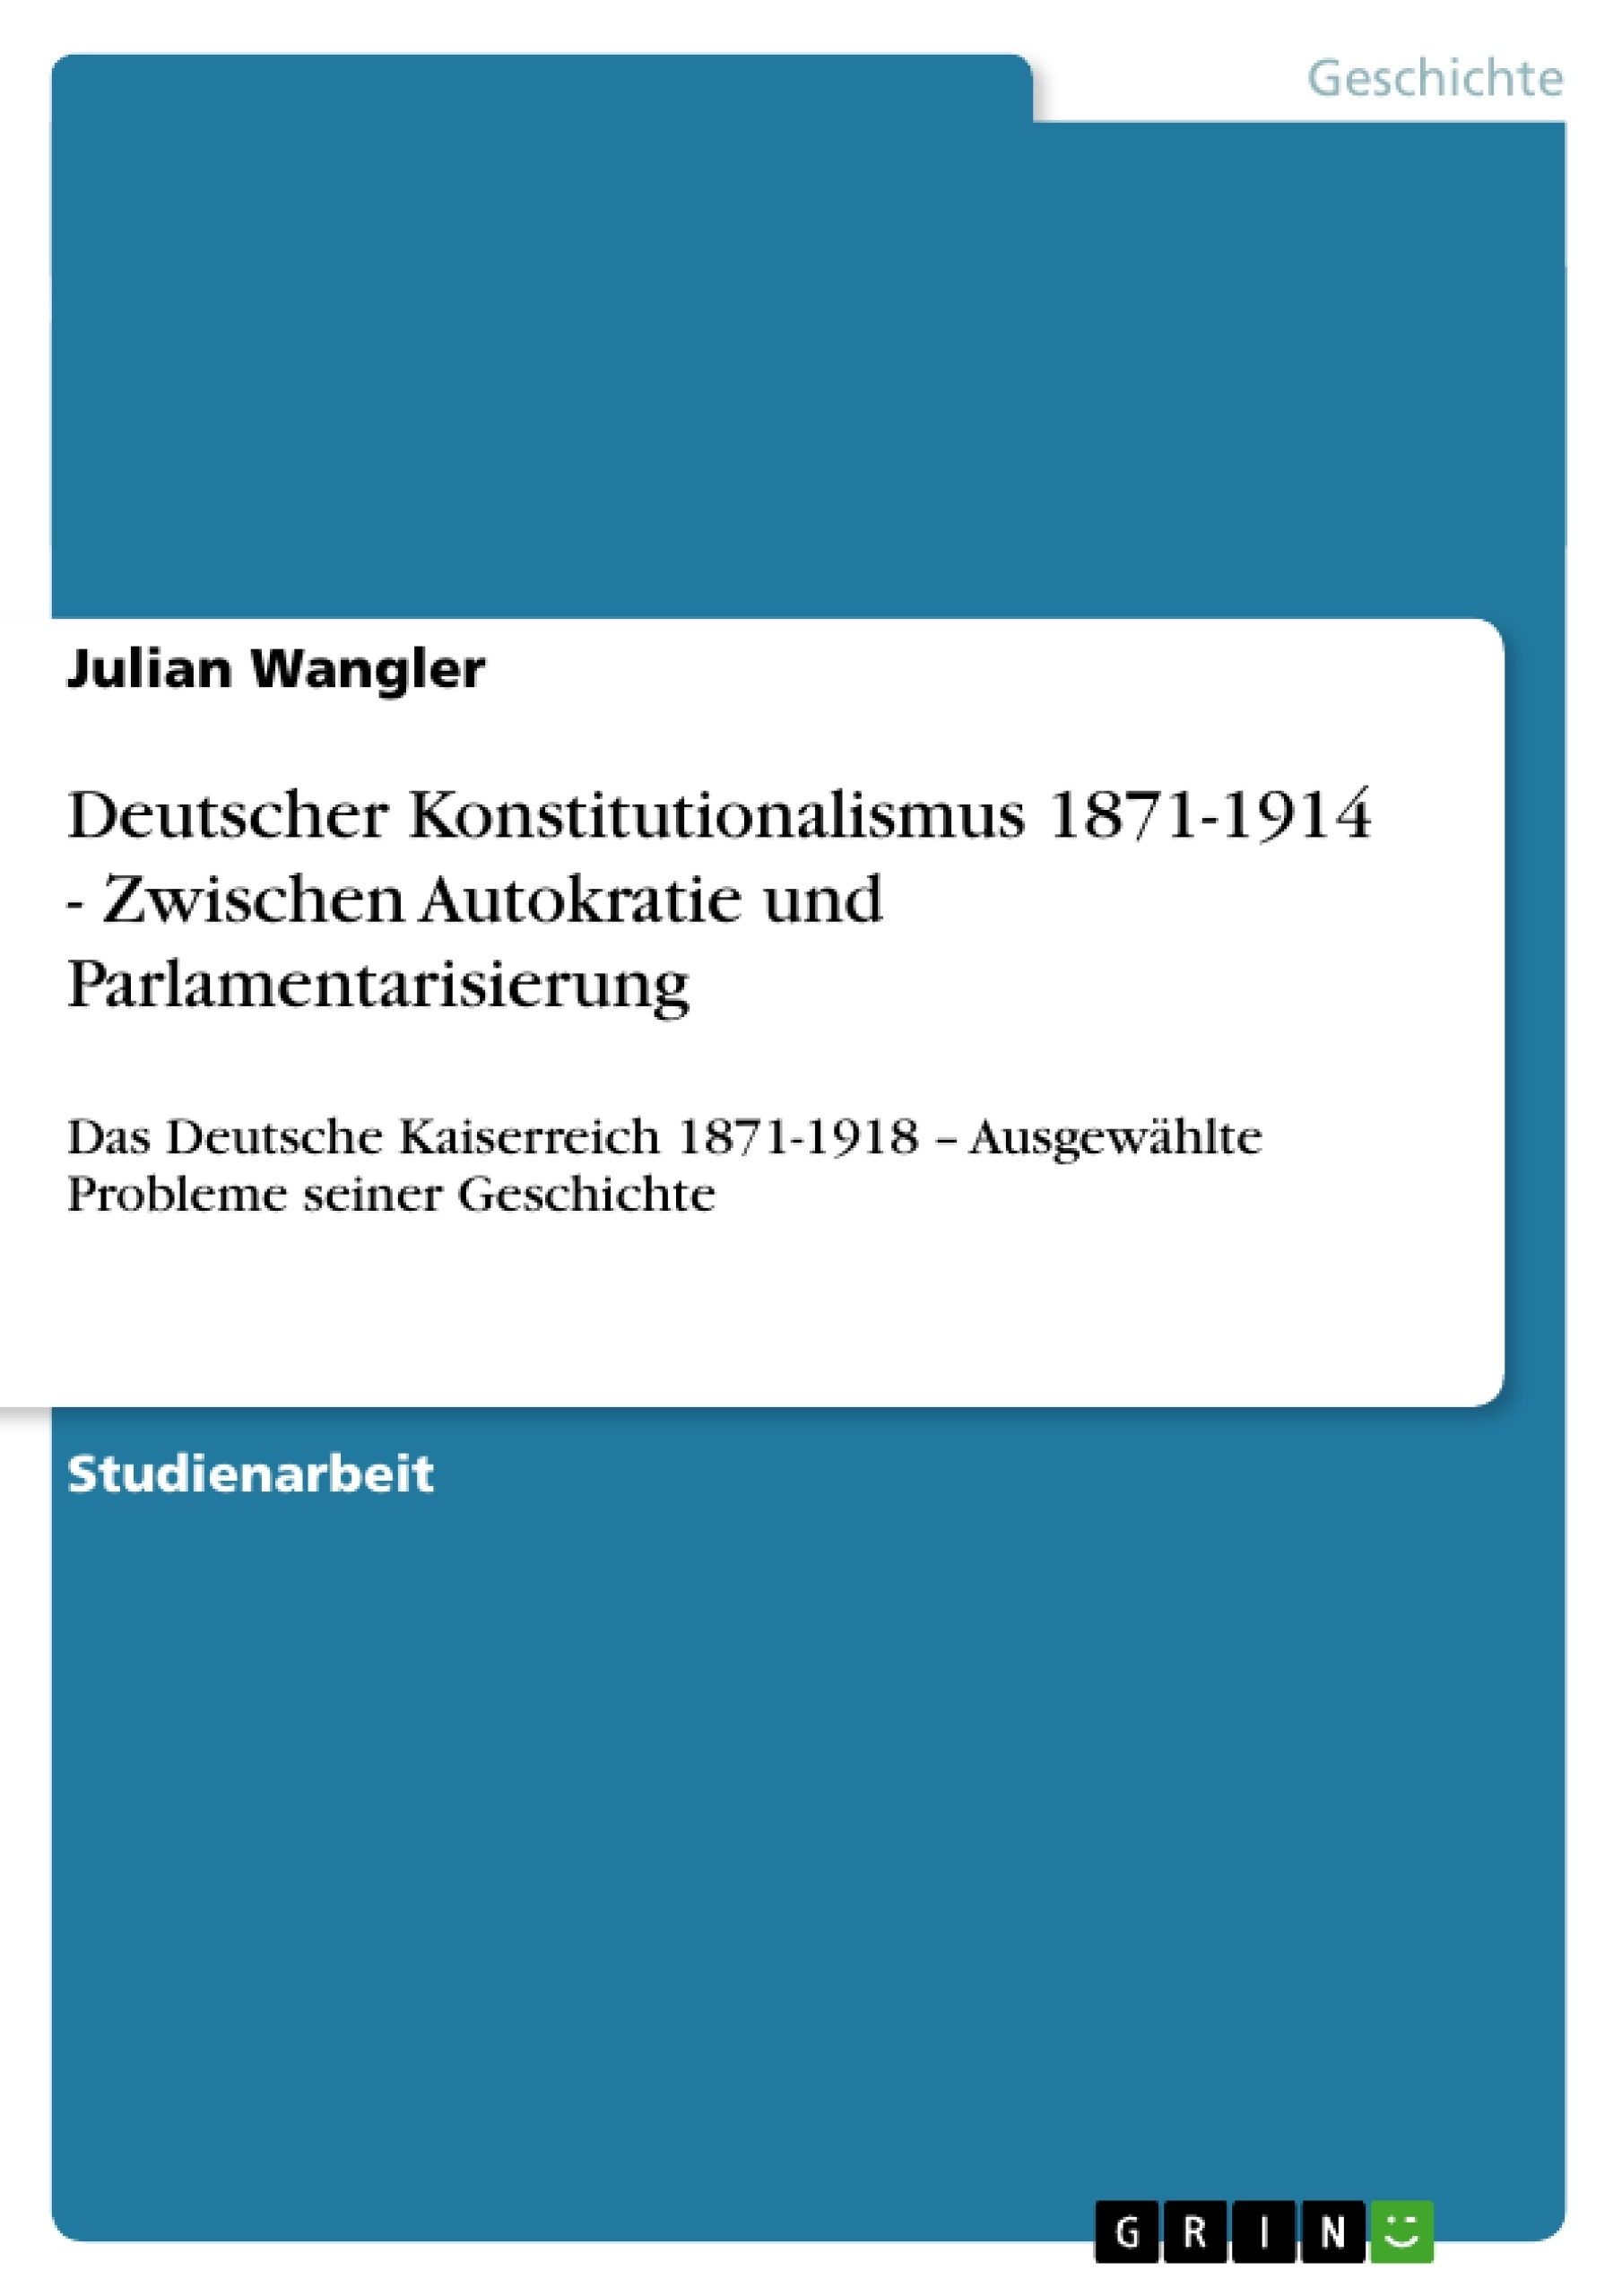 Title: Deutscher Konstitutionalismus 1871-1914 - Zwischen Autokratie und Parlamentarisierung